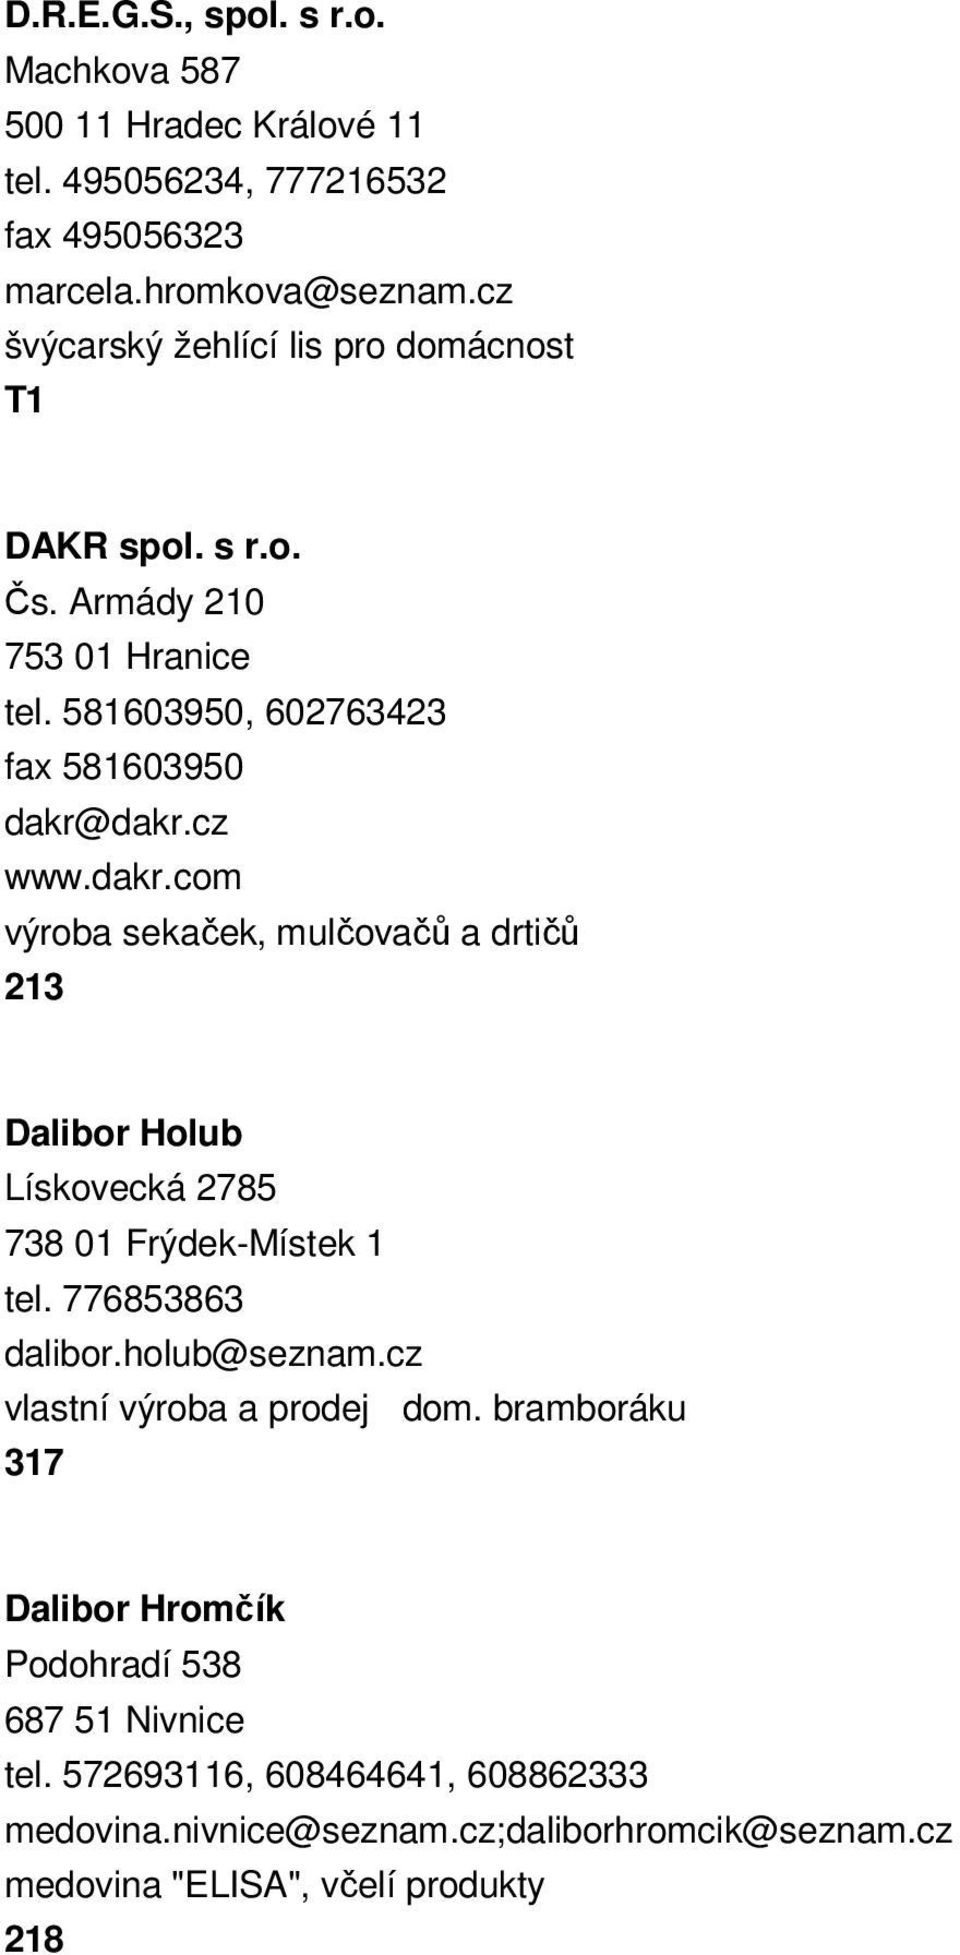 dakr.cz www.dakr.com výroba sekaček, mulčovačů a drtičů 213 Dalibor Holub Lískovecká 2785 738 01 Frýdek-Místek 1 tel. 776853863 dalibor.holub@seznam.